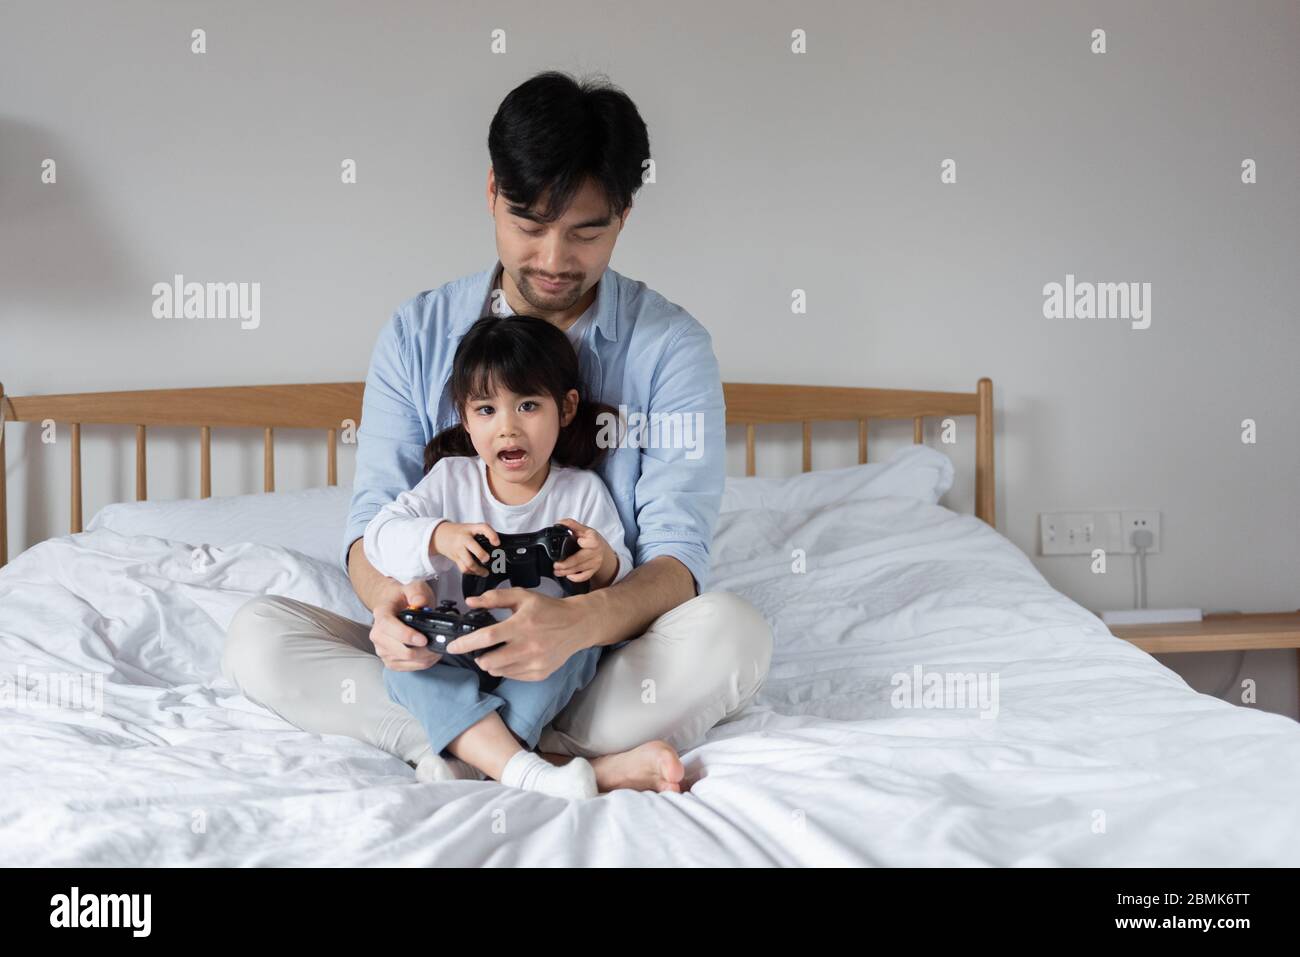 Junge asiatische Vater ist spielen Spiele auf dem Bett mit Tochter  Stockfotografie - Alamy